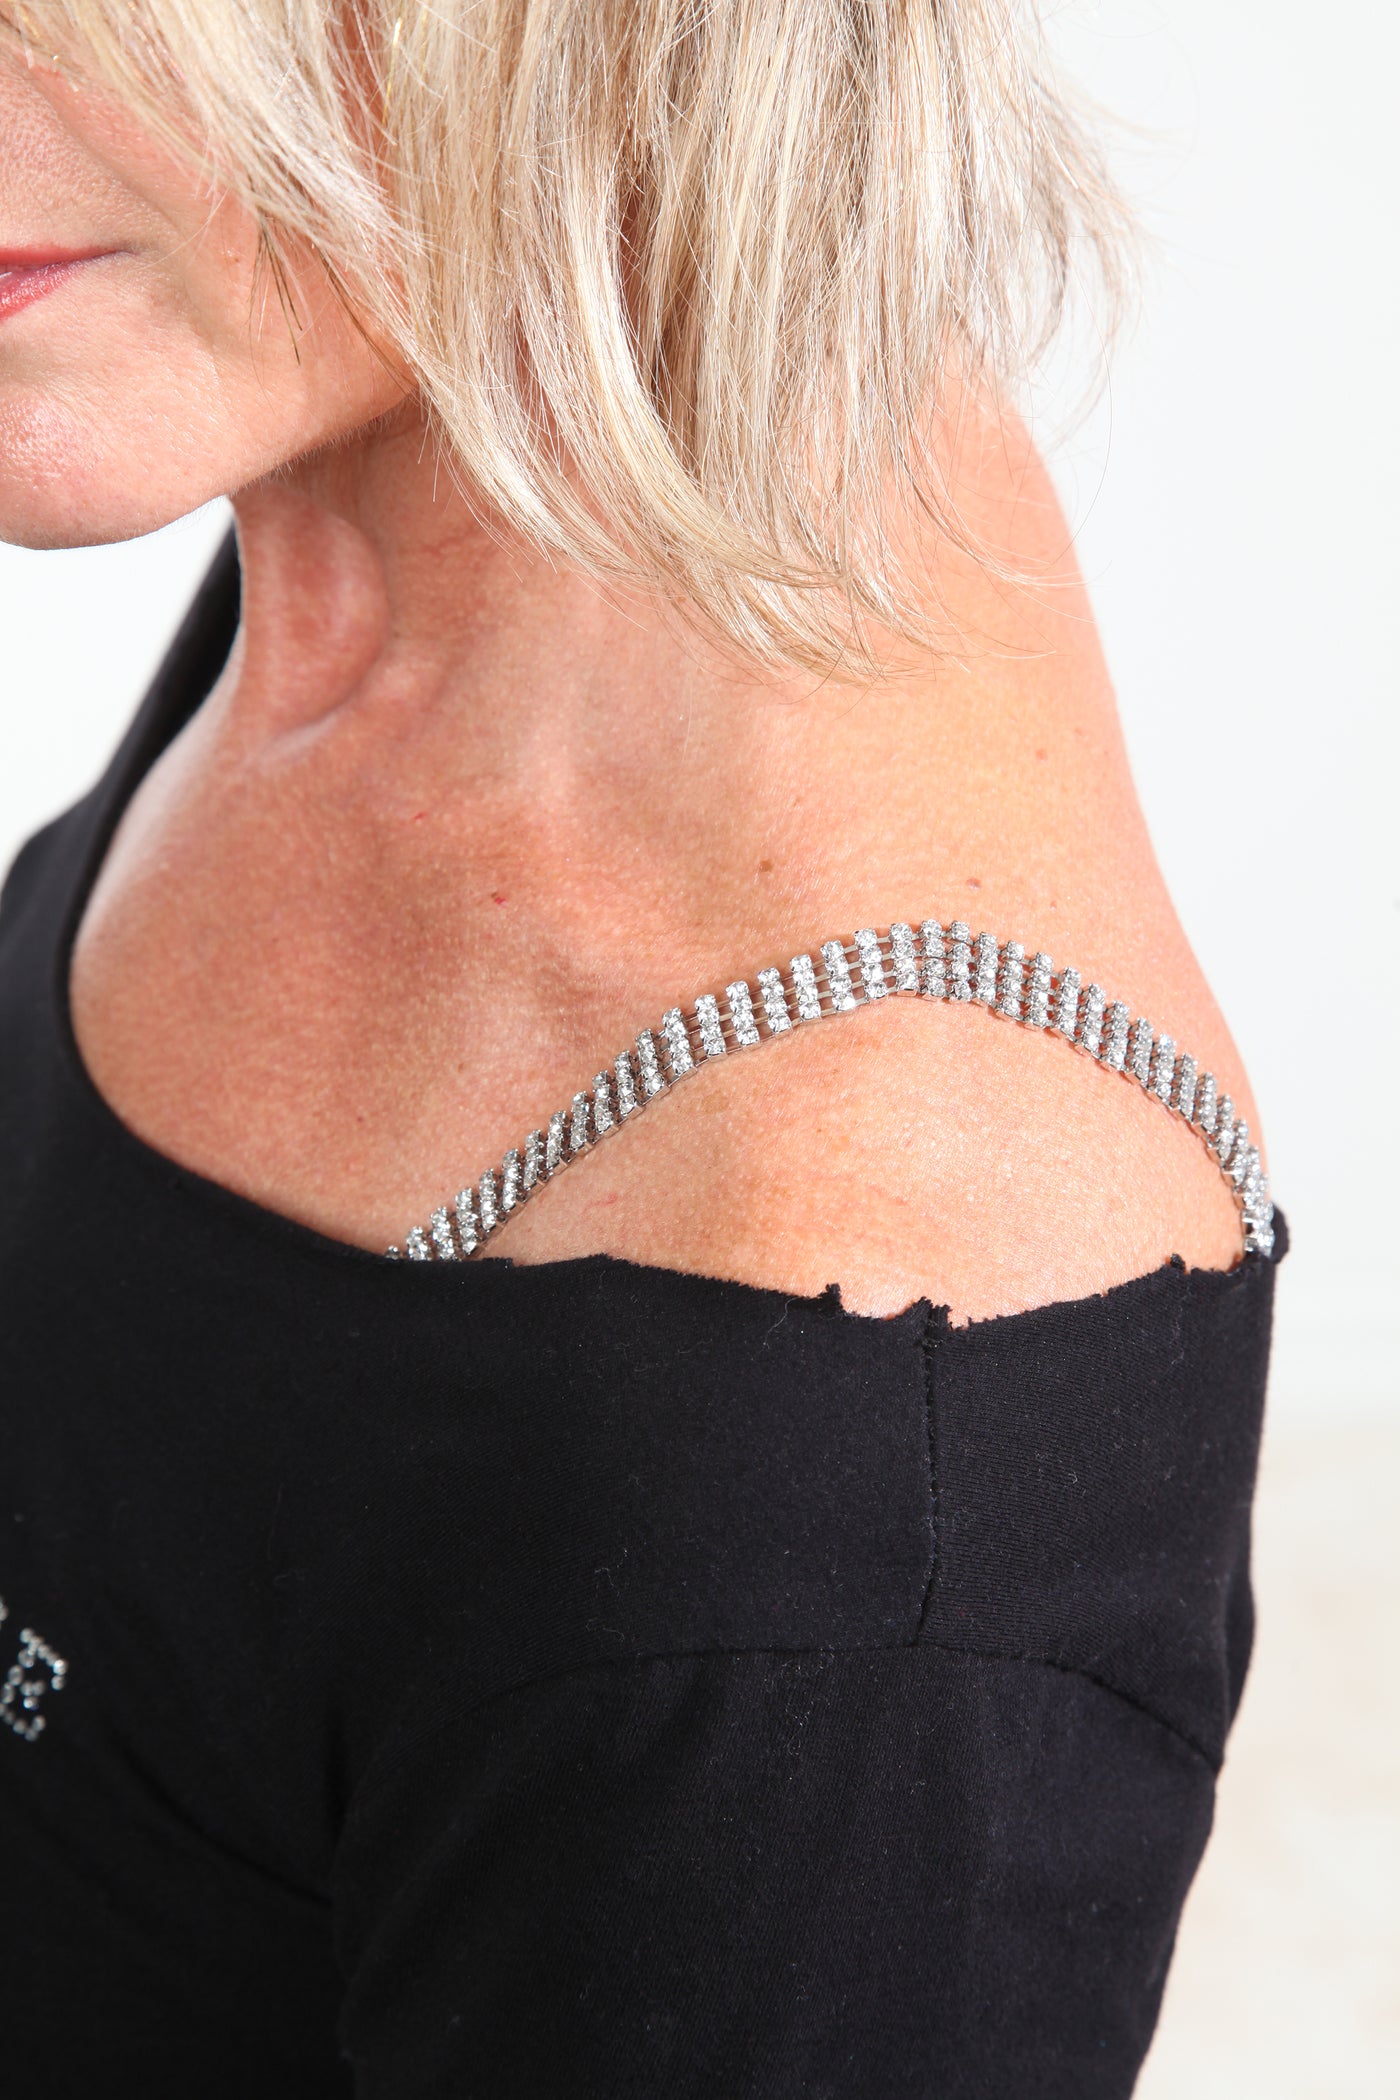 rhinestone elegant bling decorative bra straps